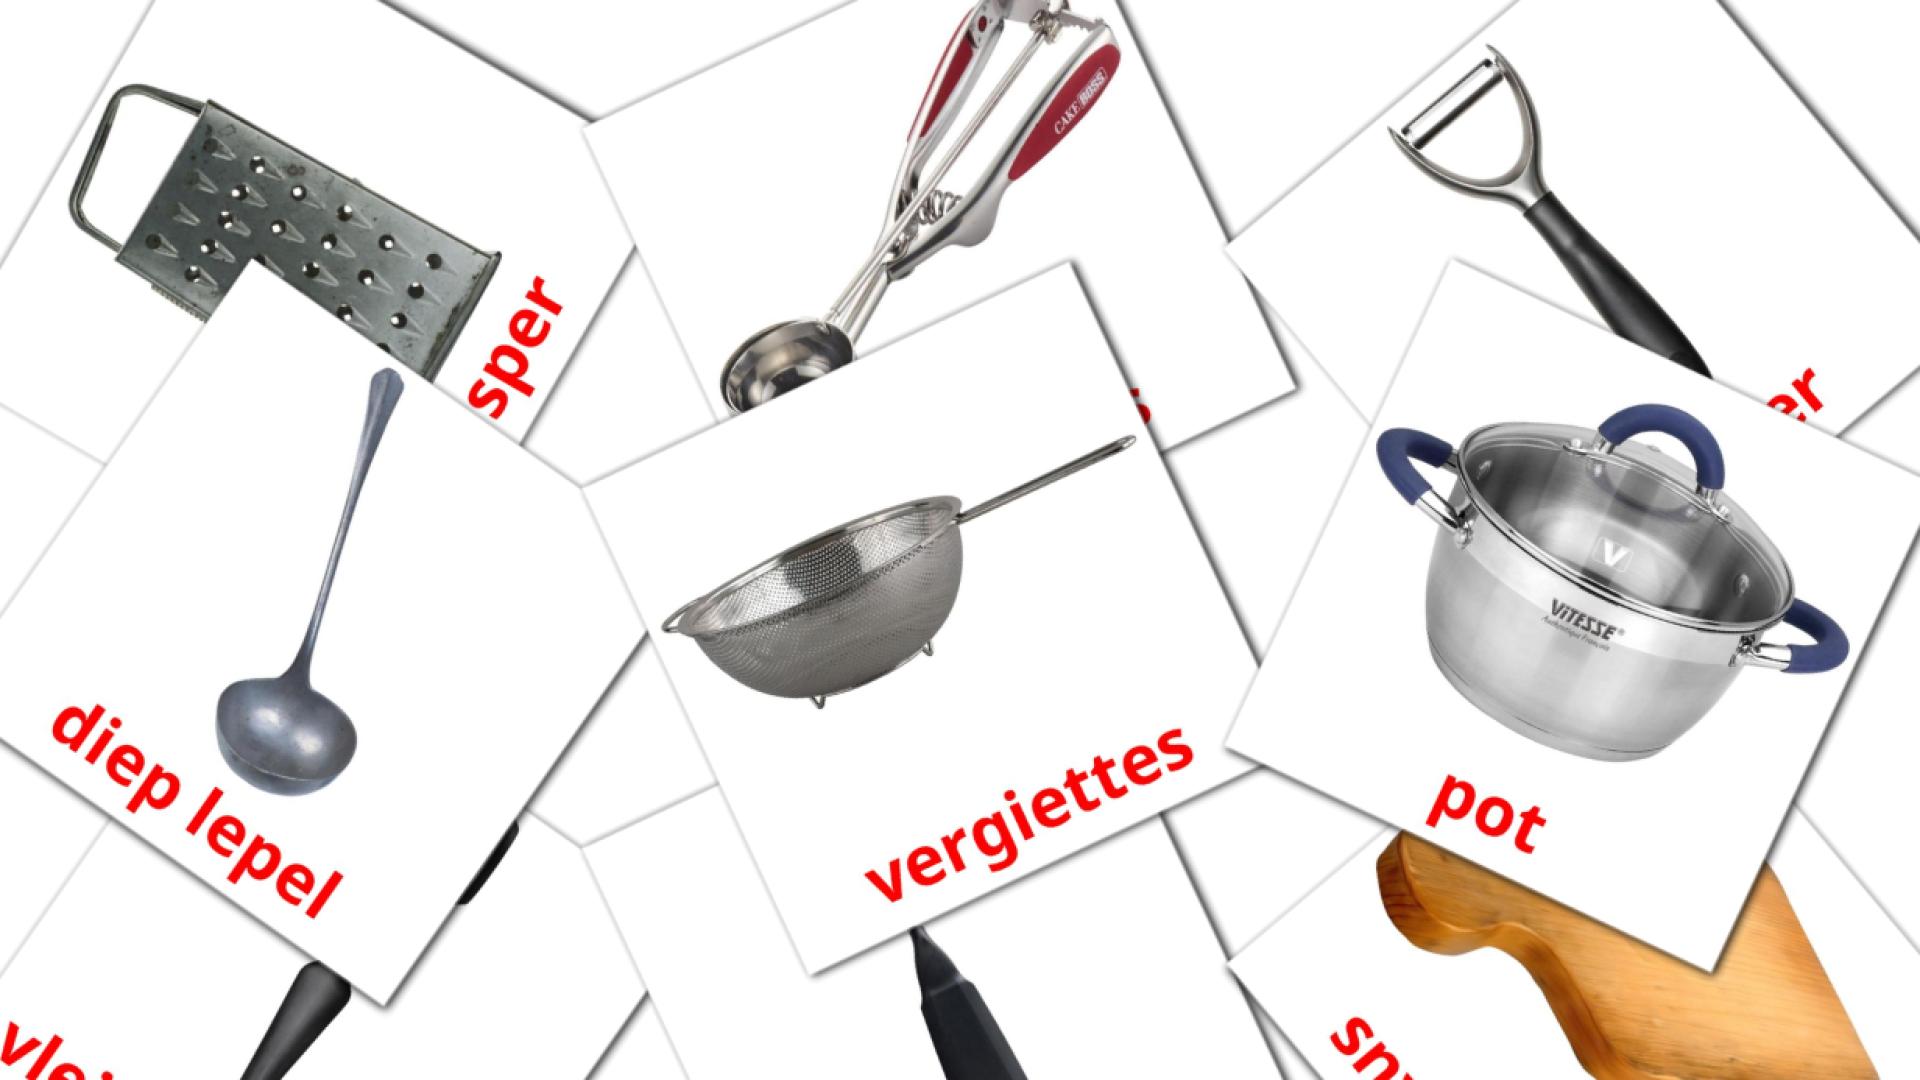 Utensili da cucina - Schede di vocabolario afrikaans